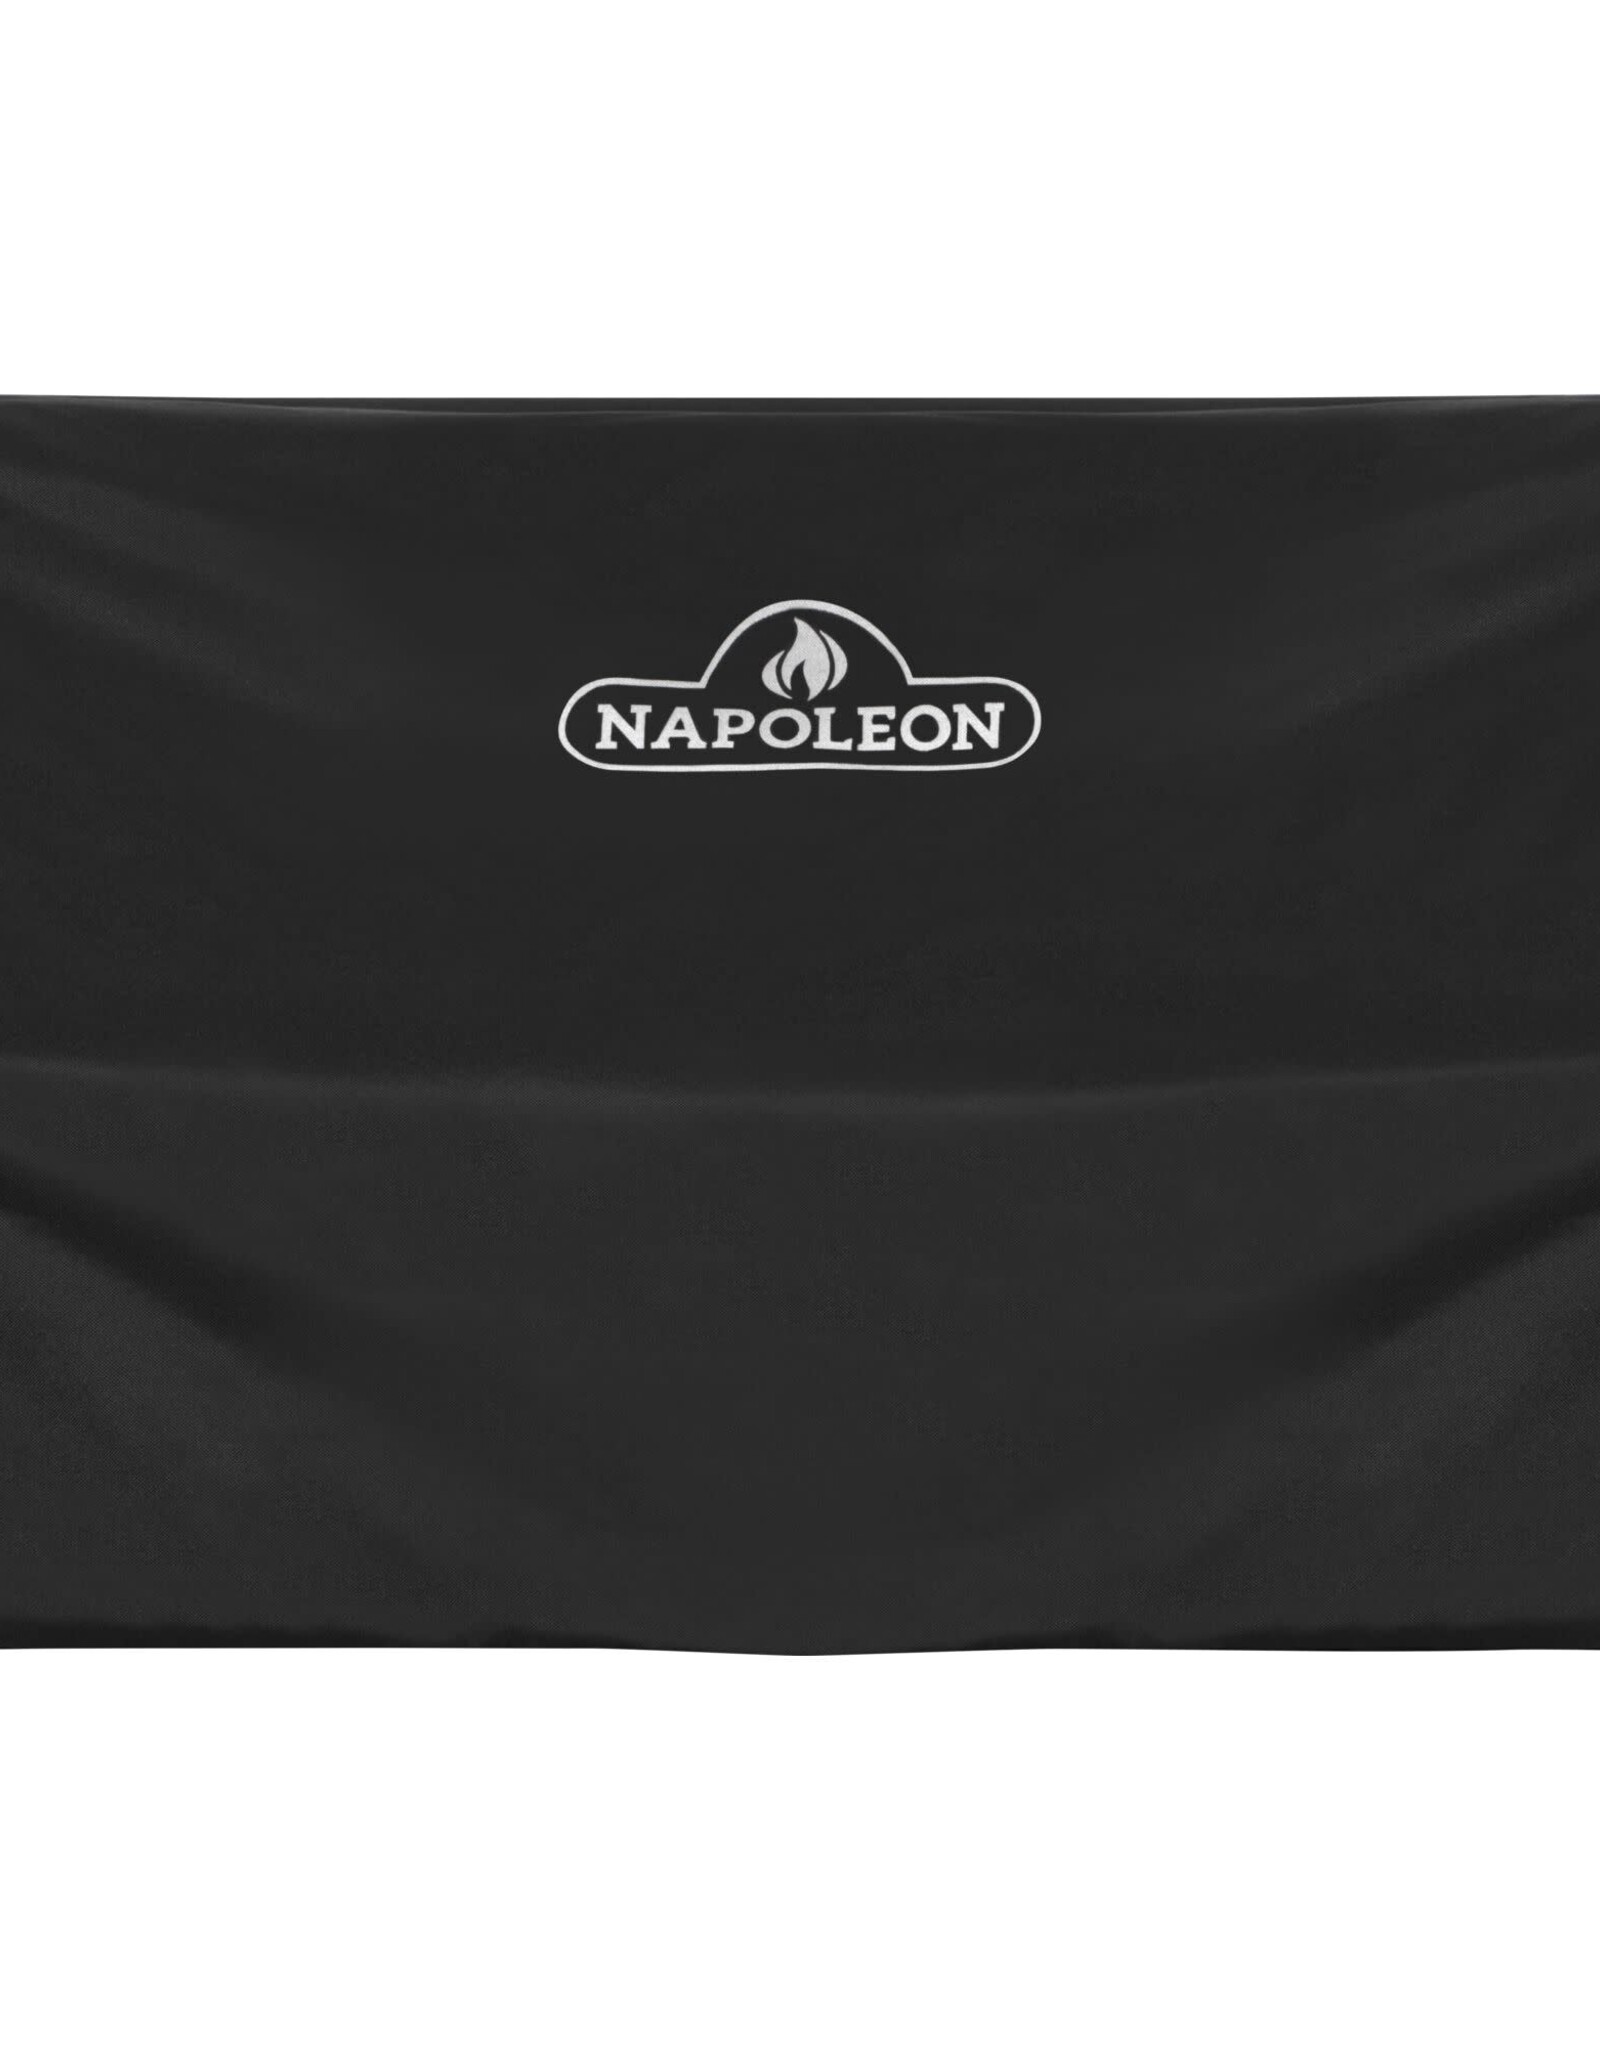 Napoleon Napoleon PRO 665 Built-In Grill Cover - 61666